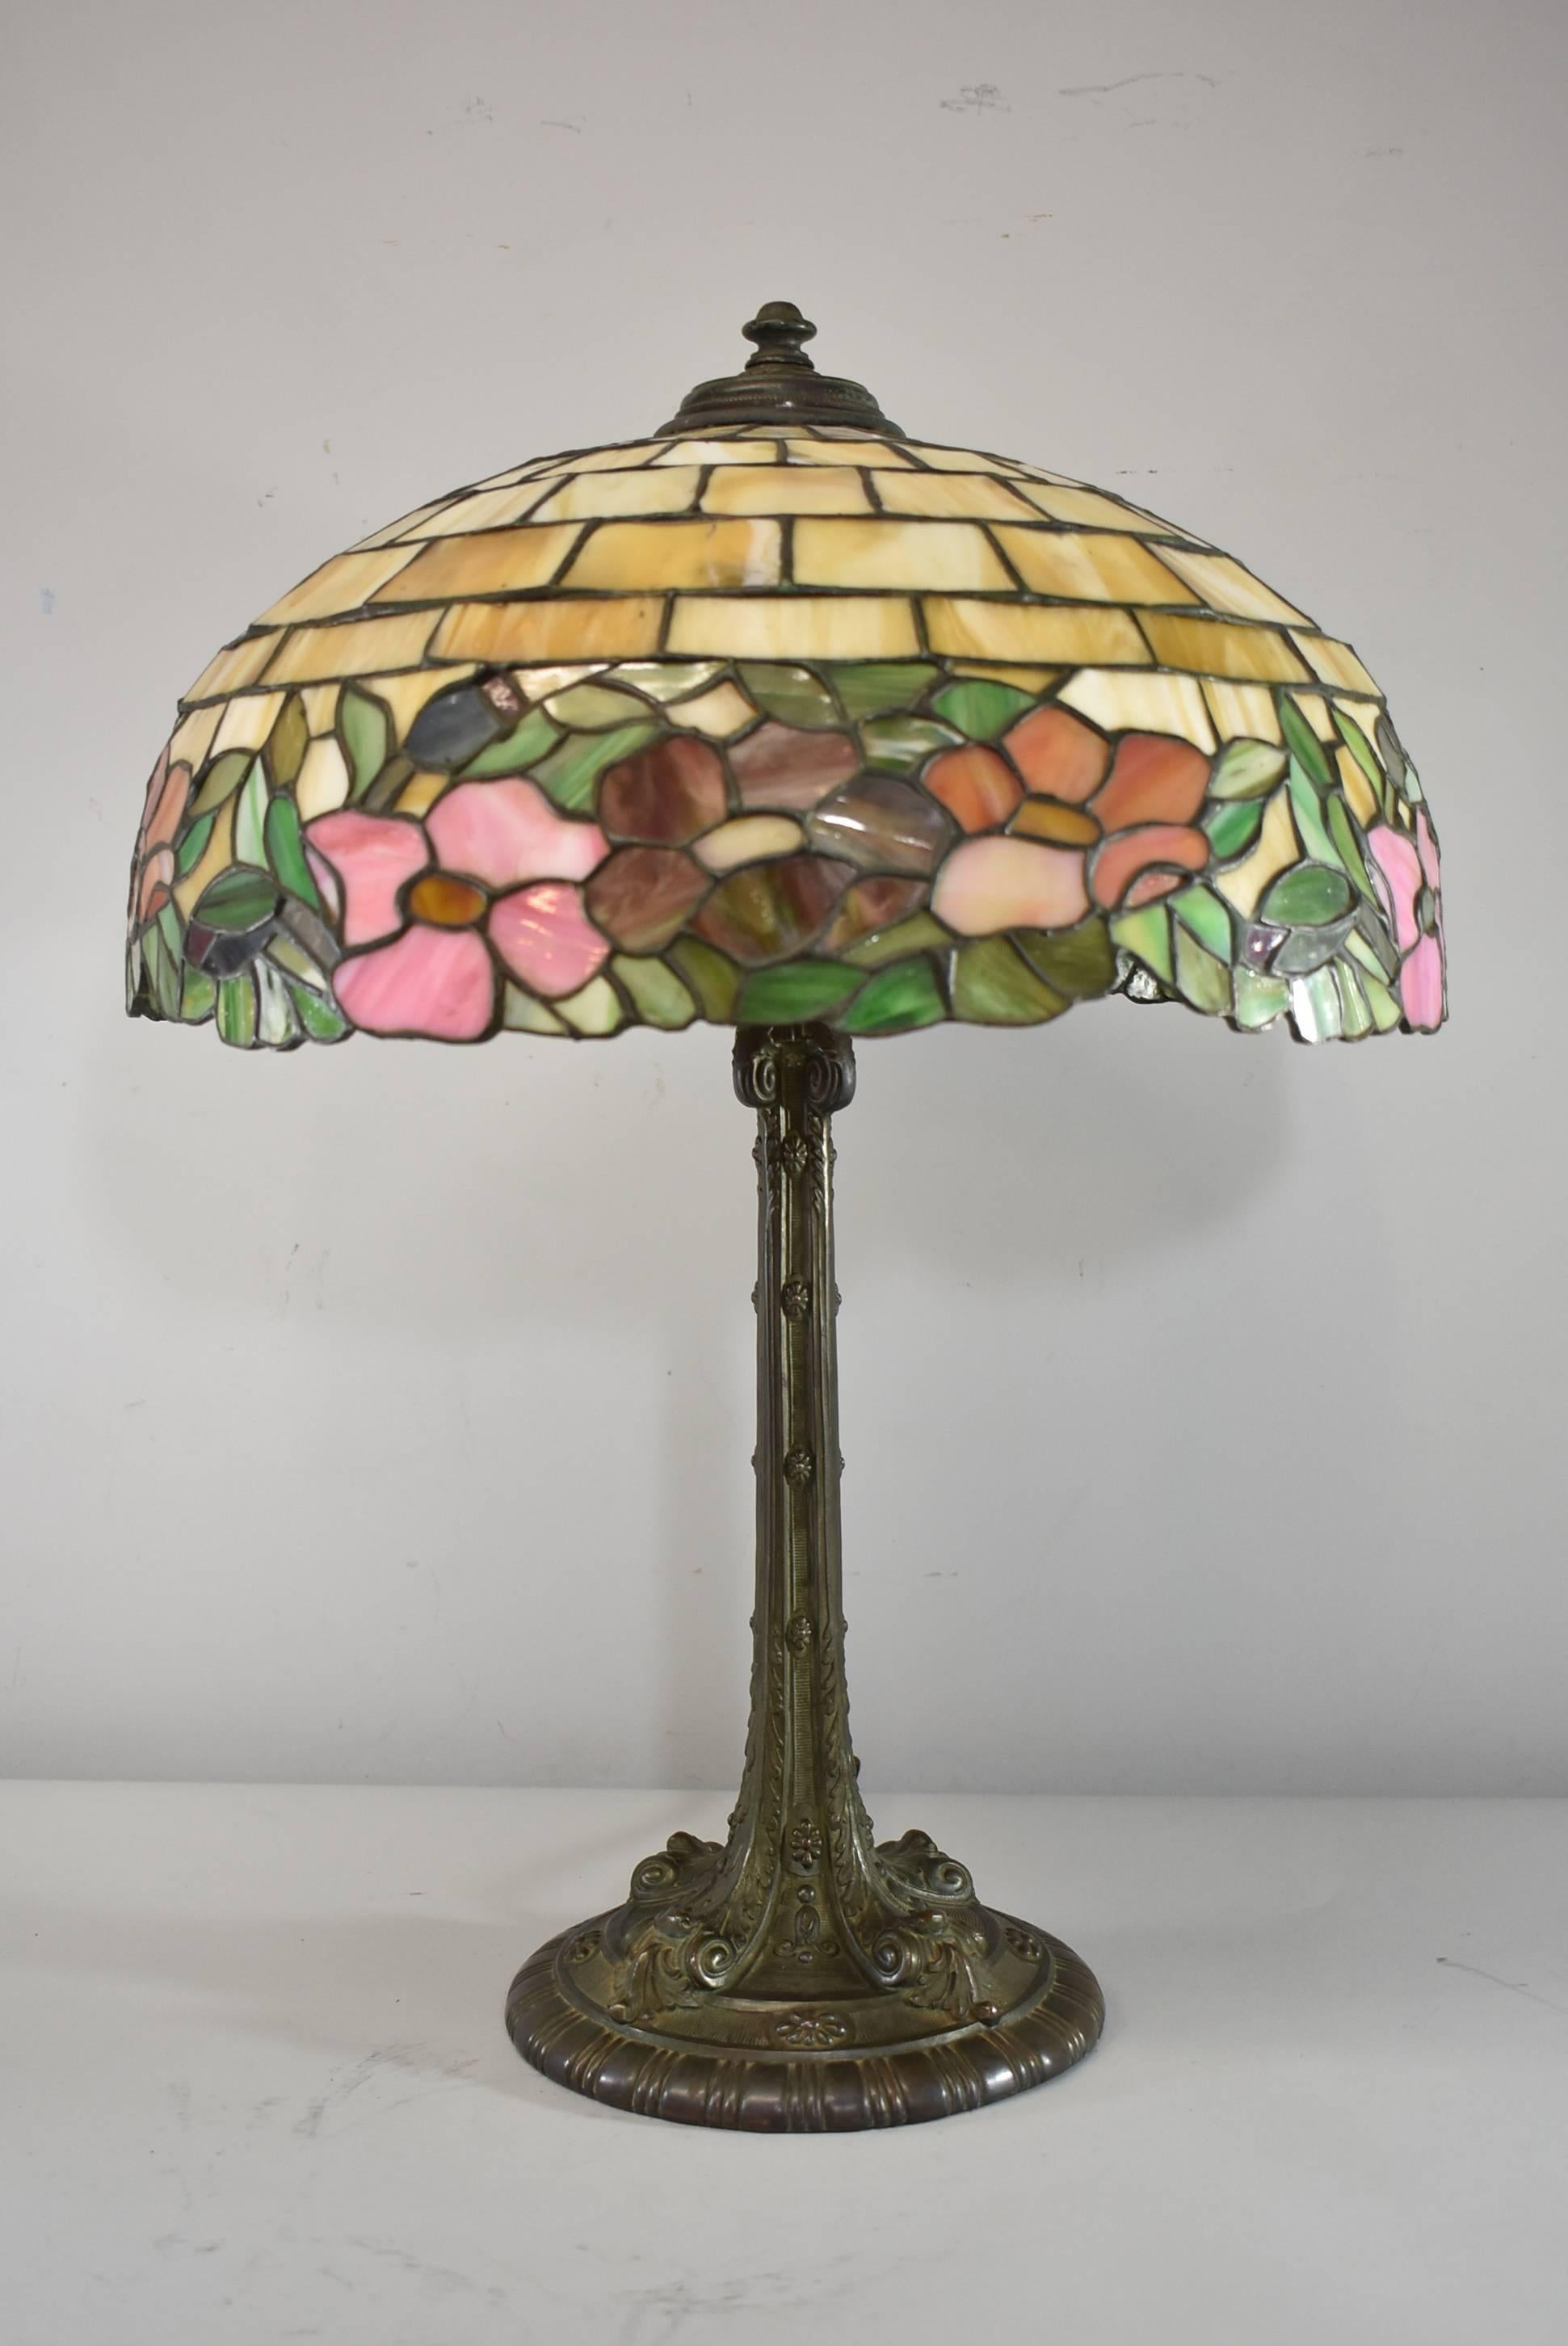 Une superbe lampe de table en verre plombé de Wilkinson. Cette magnifique lampe est ornée de pivoines en fleurs et en bourgeons. Bon câblage avec un nouveau cordon en tissu. La base a une belle patine. Les dimensions sont de 25